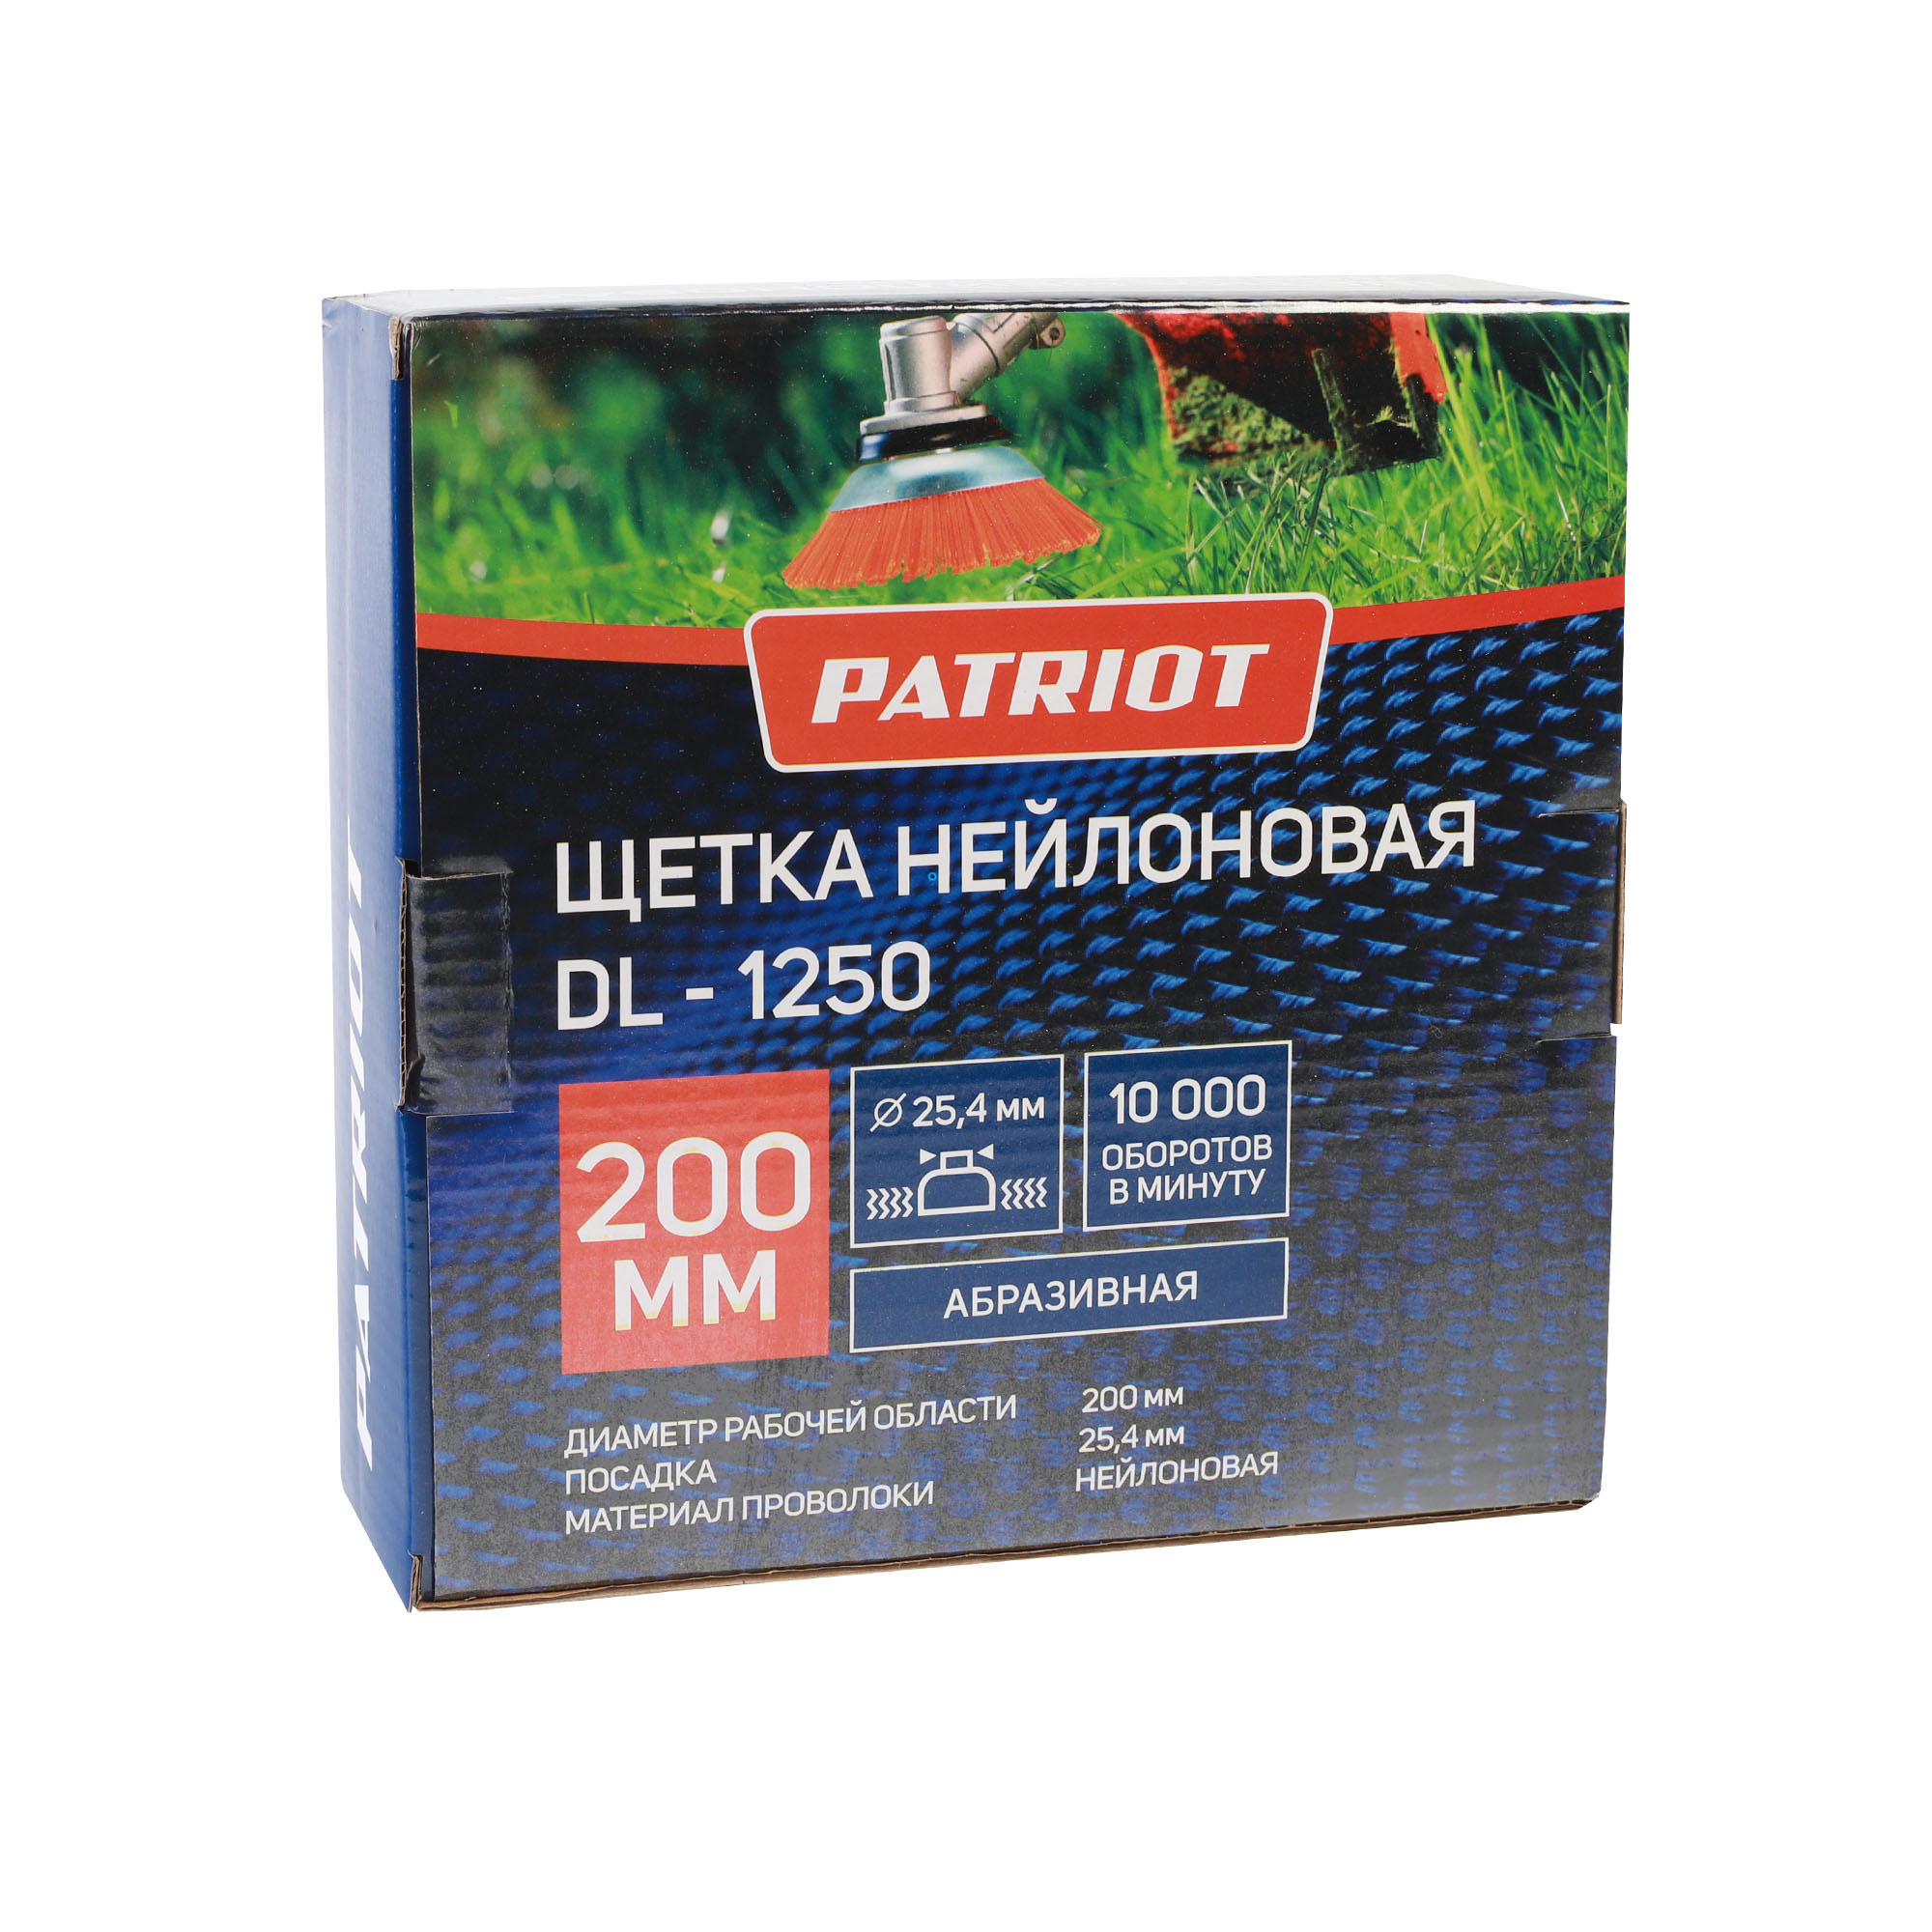 Щетка PATRIOT DL-1250 для триммера